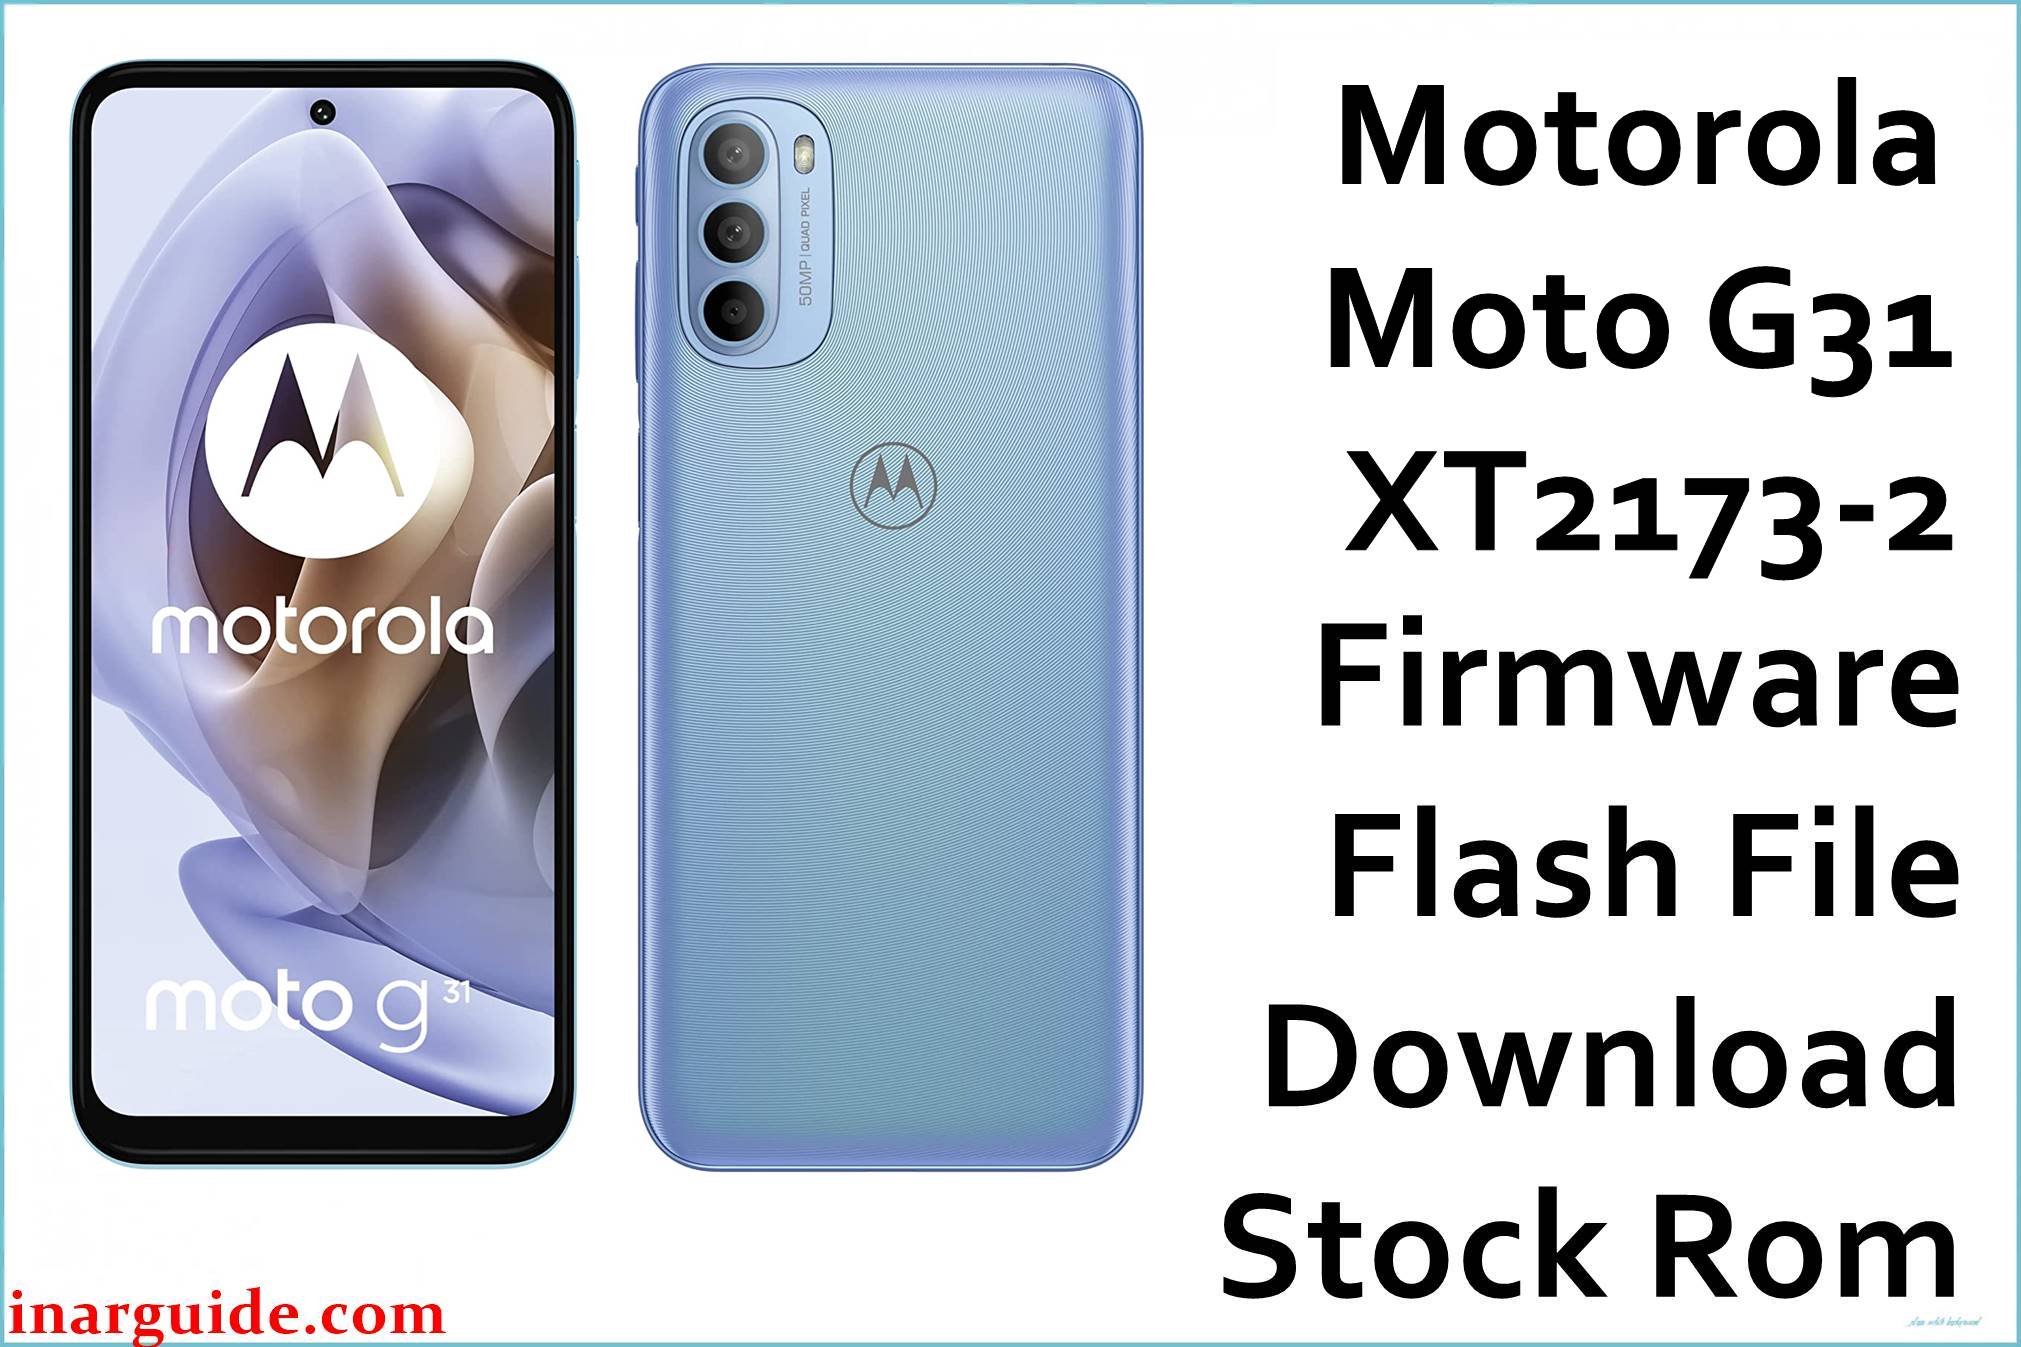 Motorola Moto G31 XT2173-2